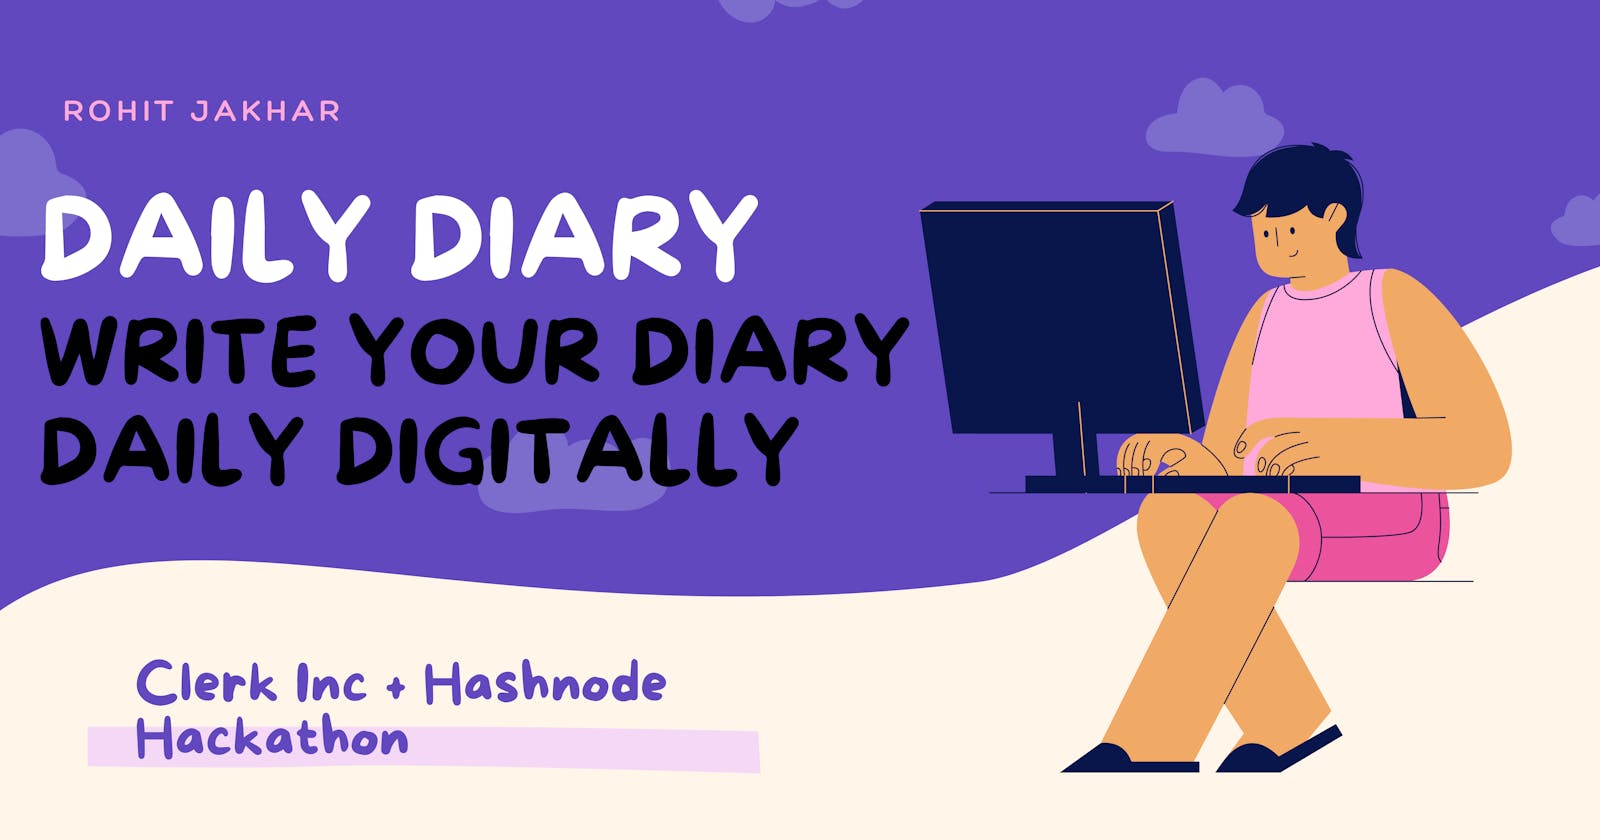 Daily Diary: Write your diary daily digitally